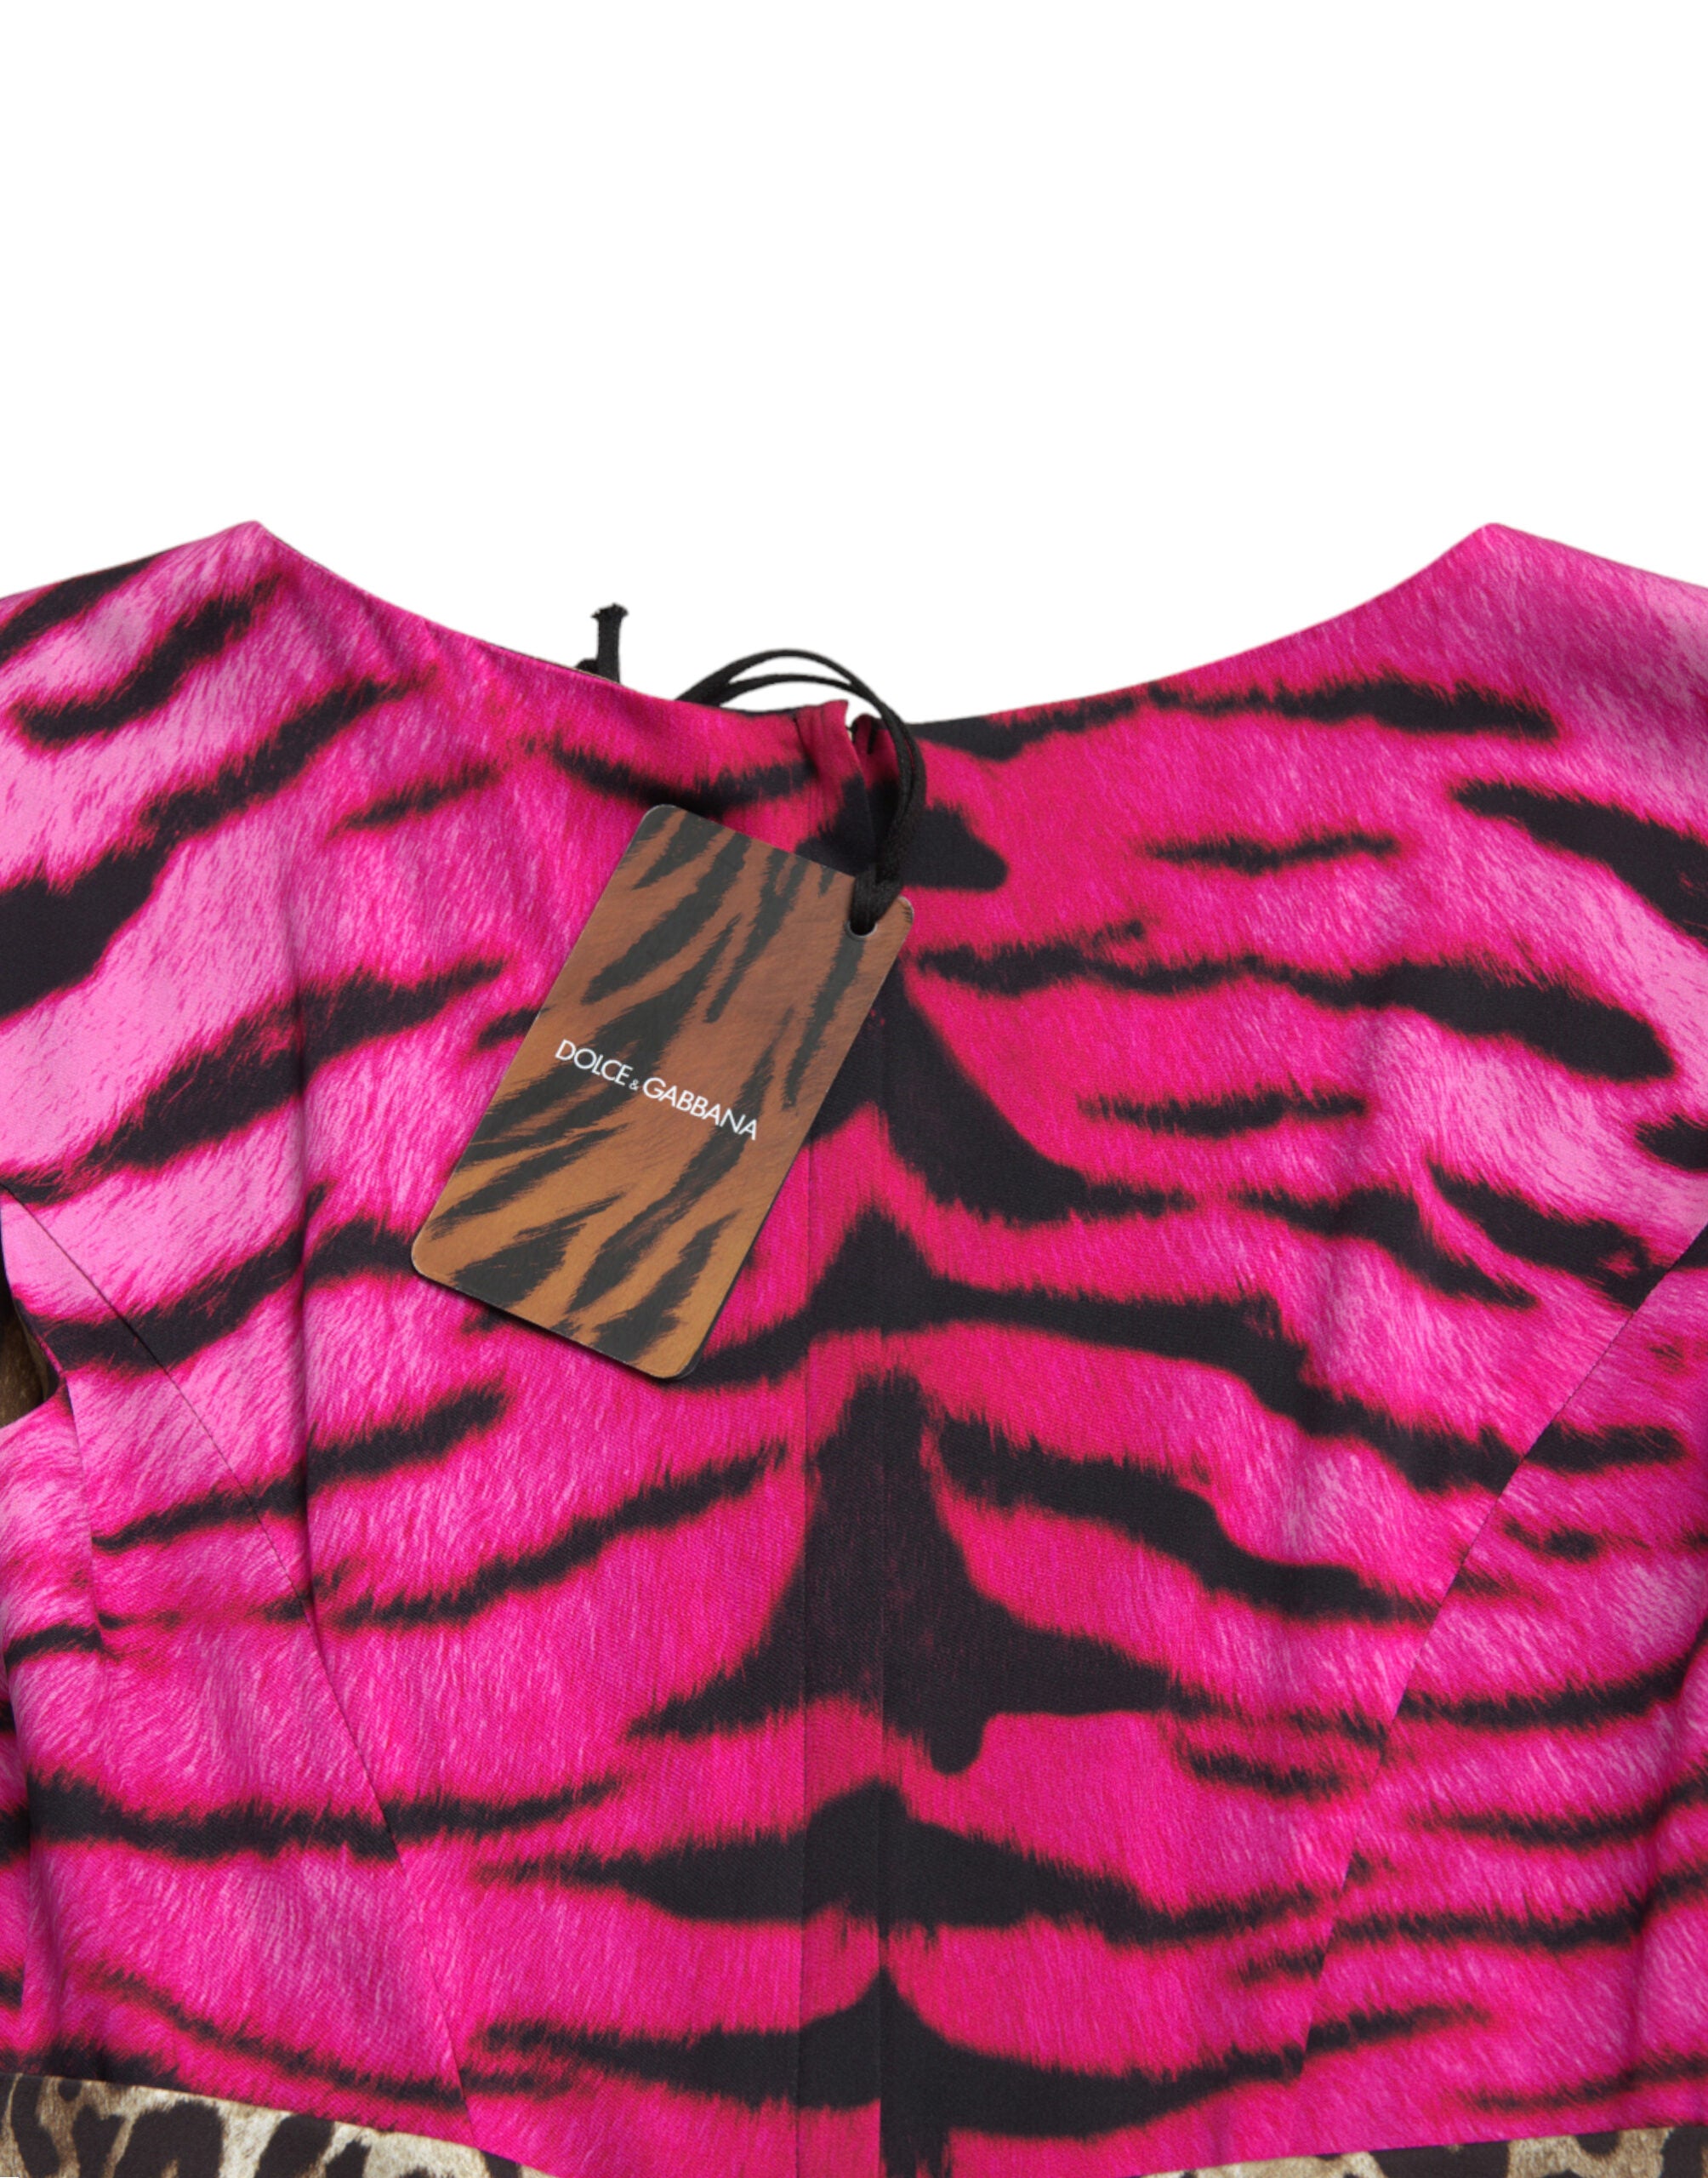 Dolce & Gabbana Multicolor Tiger Leopard Sheath Midi  Dress